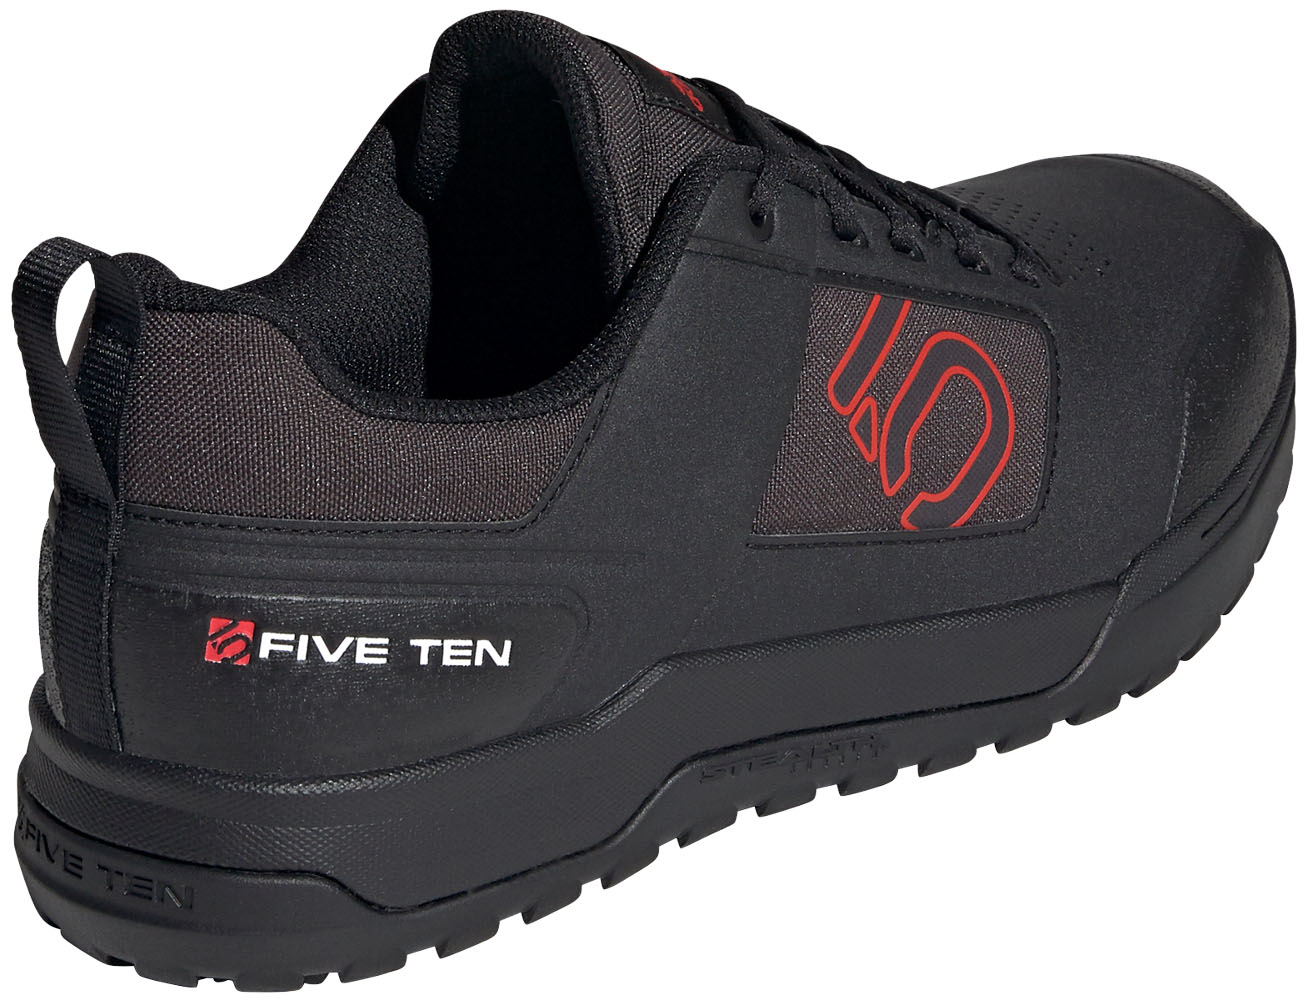 Five Ten Impact Pro Mountain Bike Shoes - core black/red